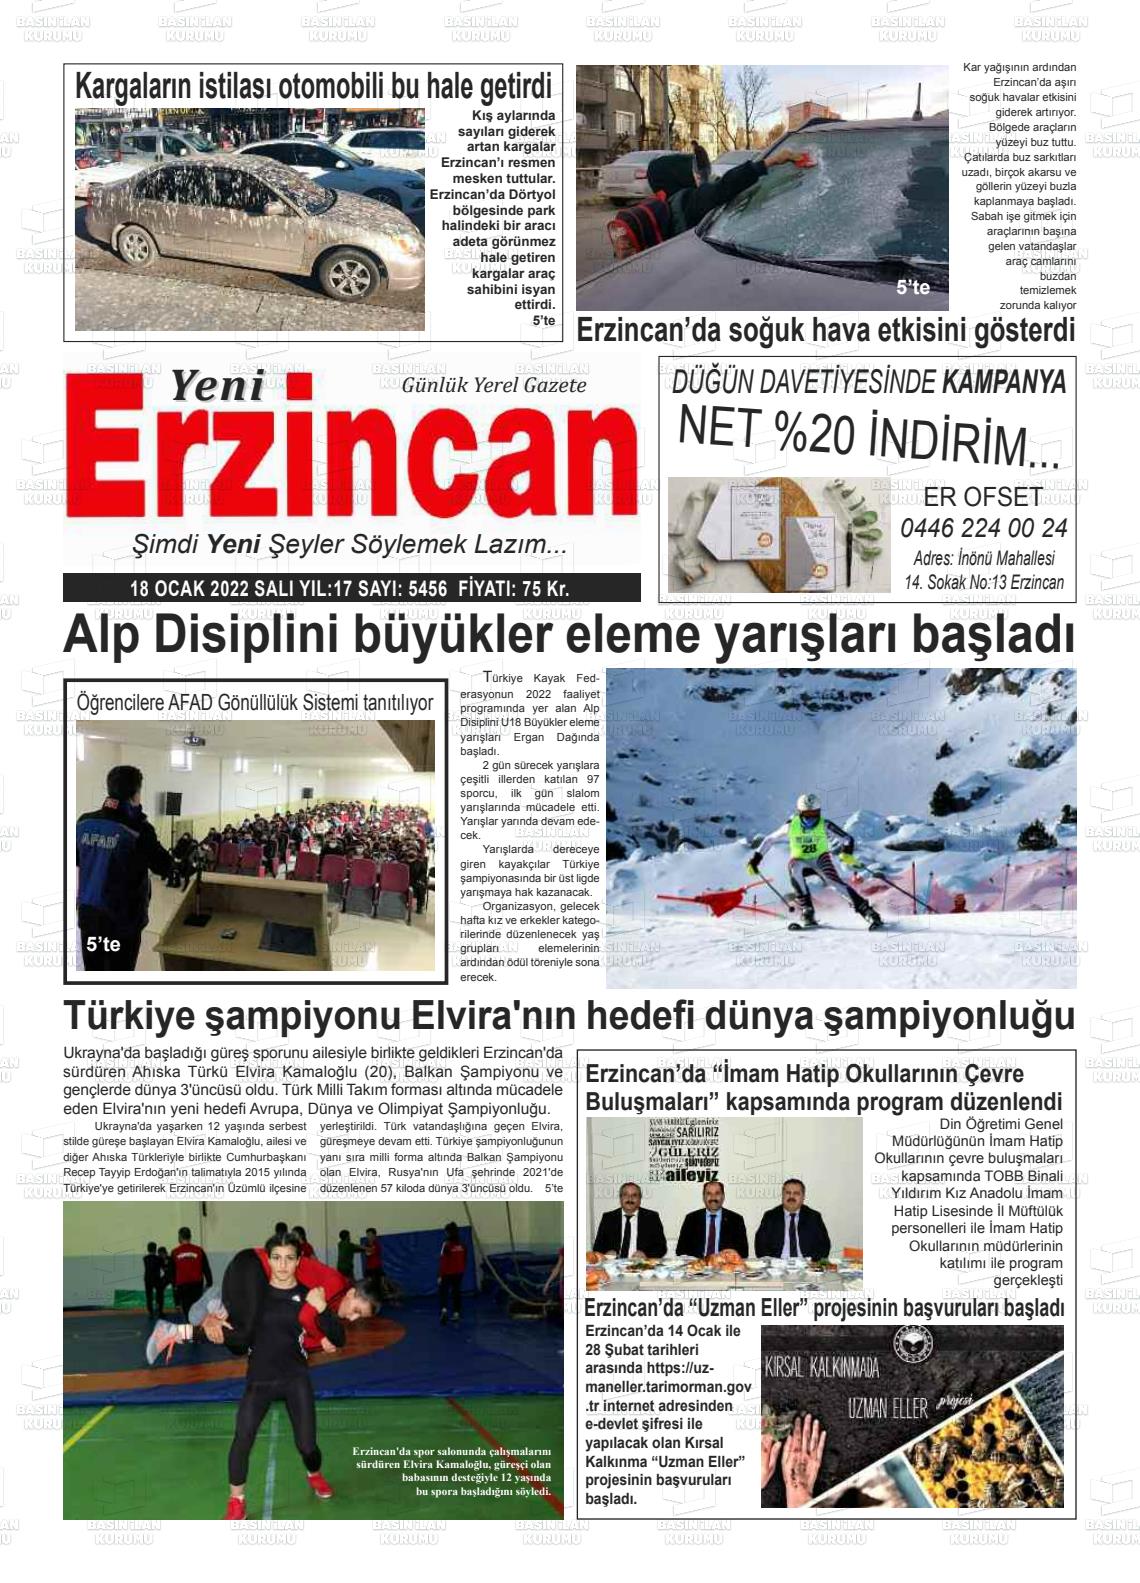 18 Ocak 2022 Yeni Erzincan Gazete Manşeti